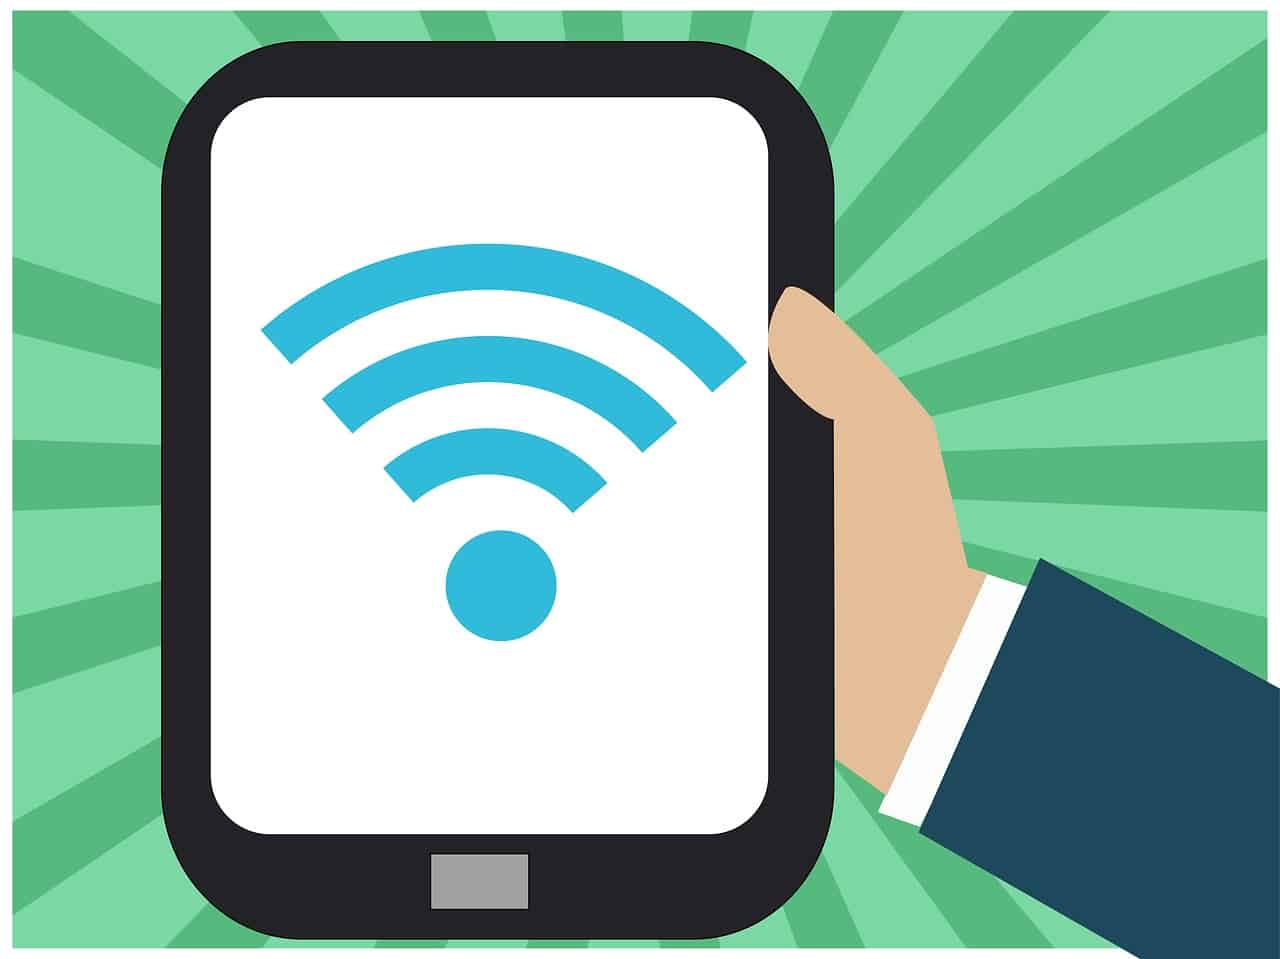 Aeroportos brasileiros vão ganhar conexões Wi-Fi da Boingo Wireless até 2020